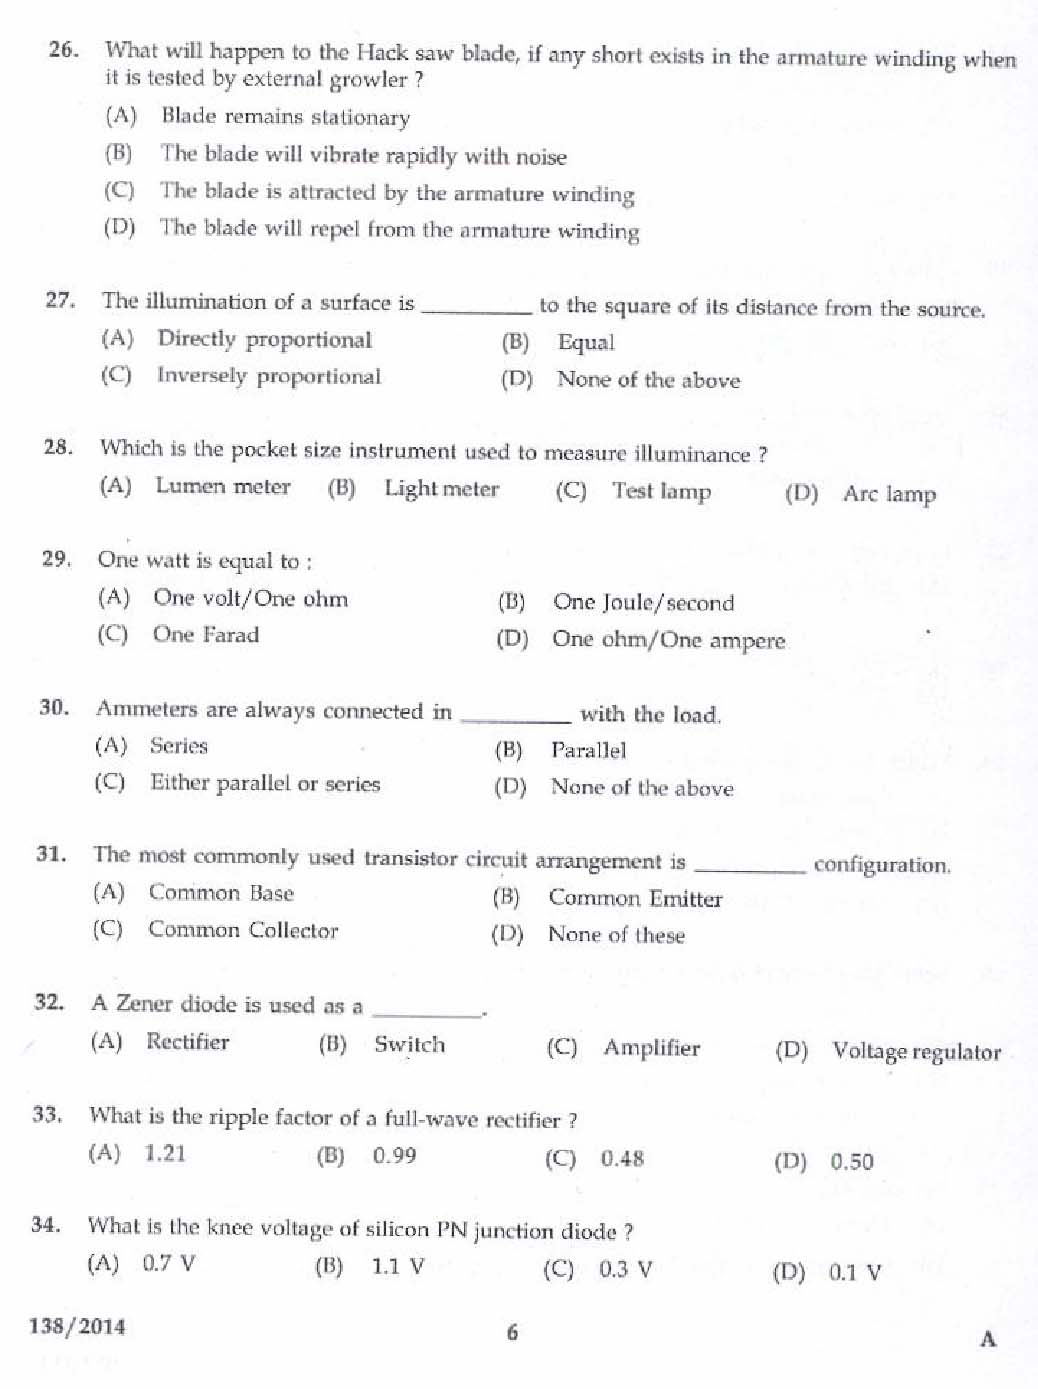 Kerala PSC Junior Instructor Exam Question Paper Code 1382014 4